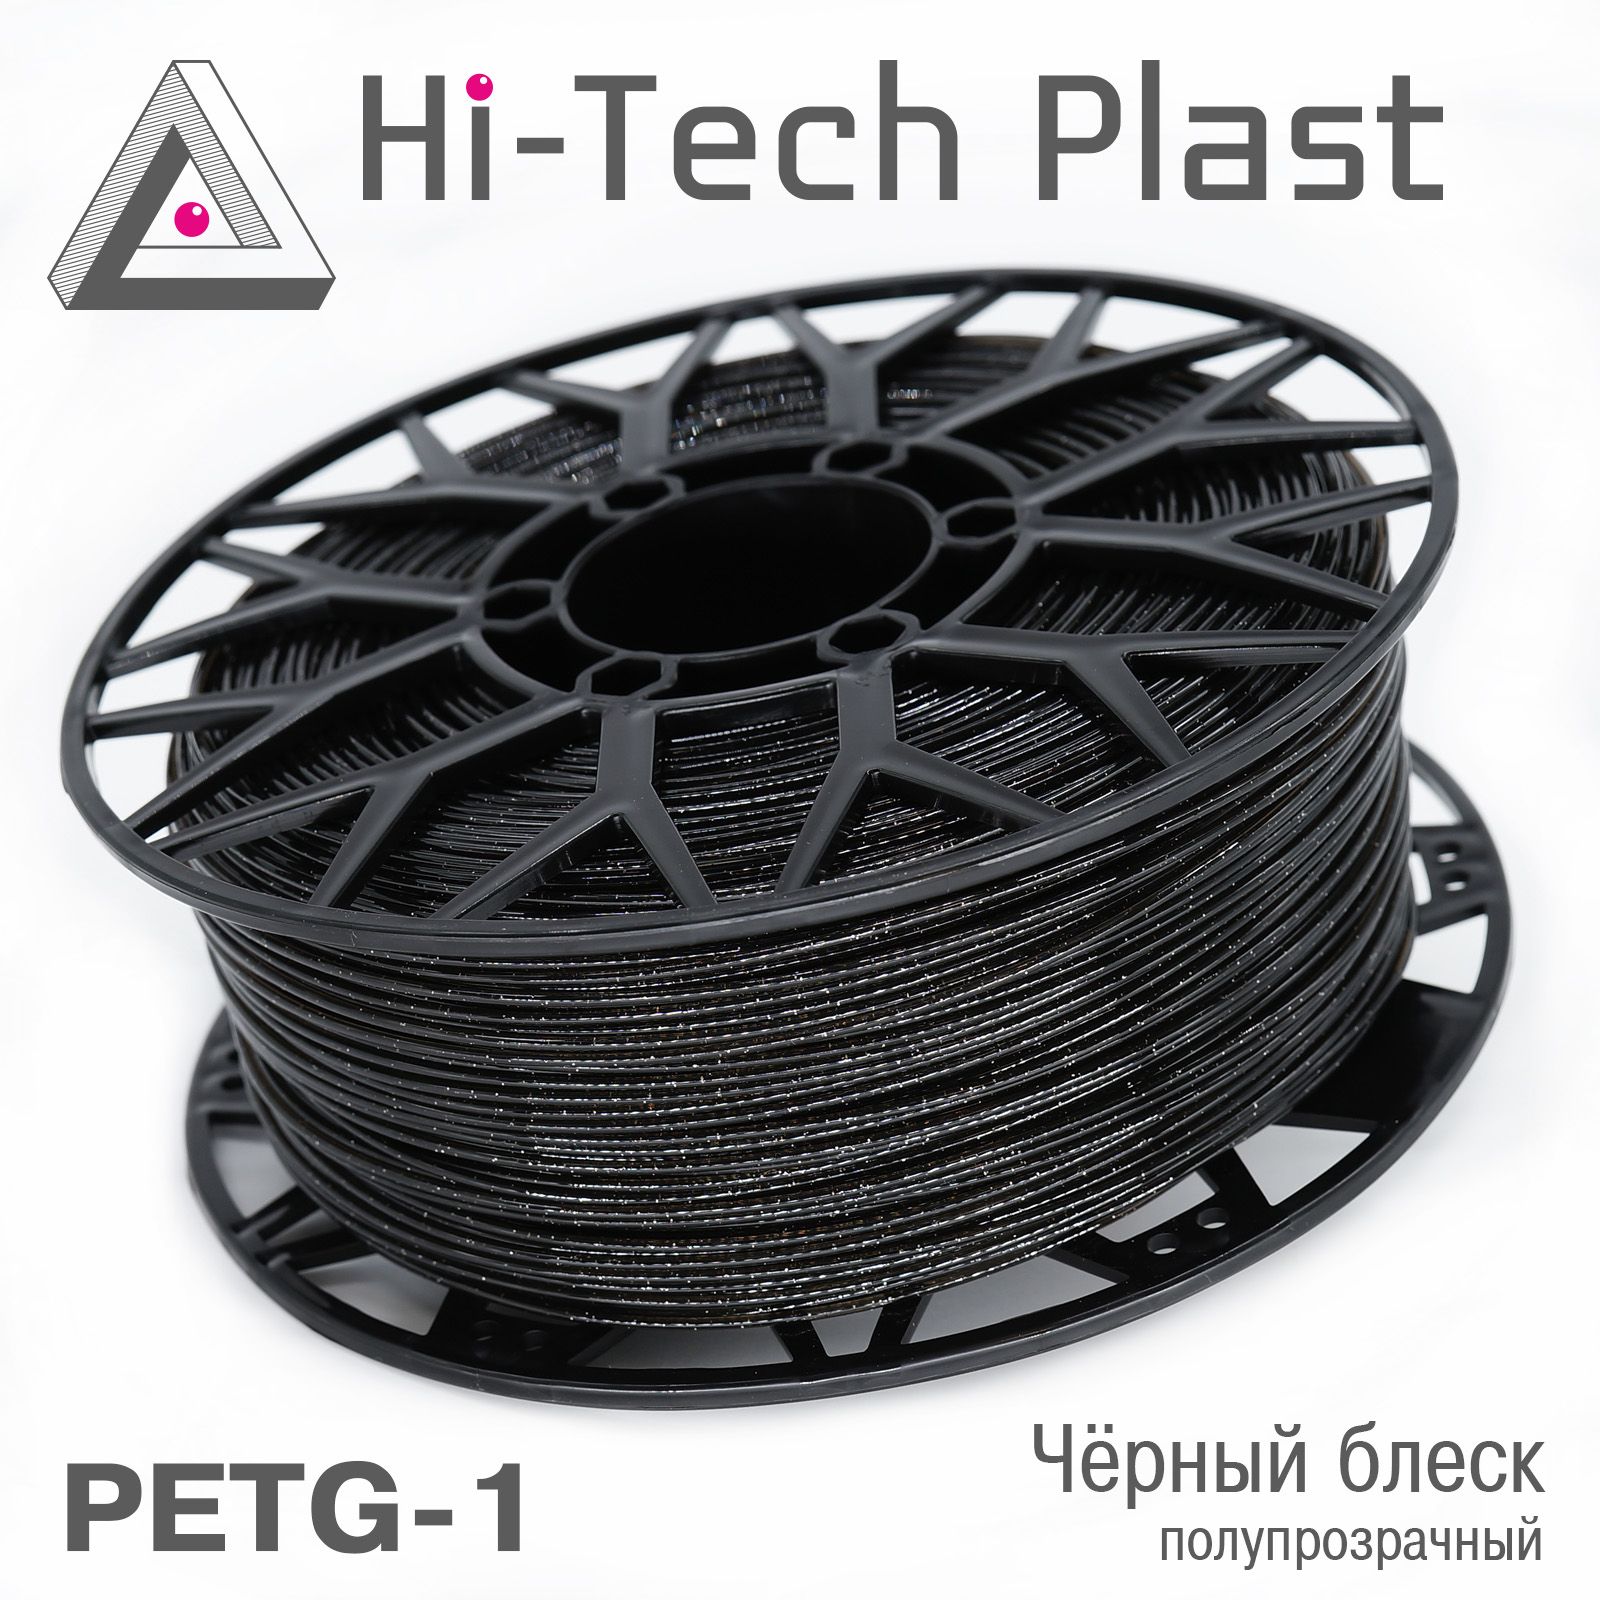 Пластикдля3Dпринтера"Hi-TechPlast"PETG-1(PET-G).Чёрныйблескполупрозрачный.1,75мм,1кг.